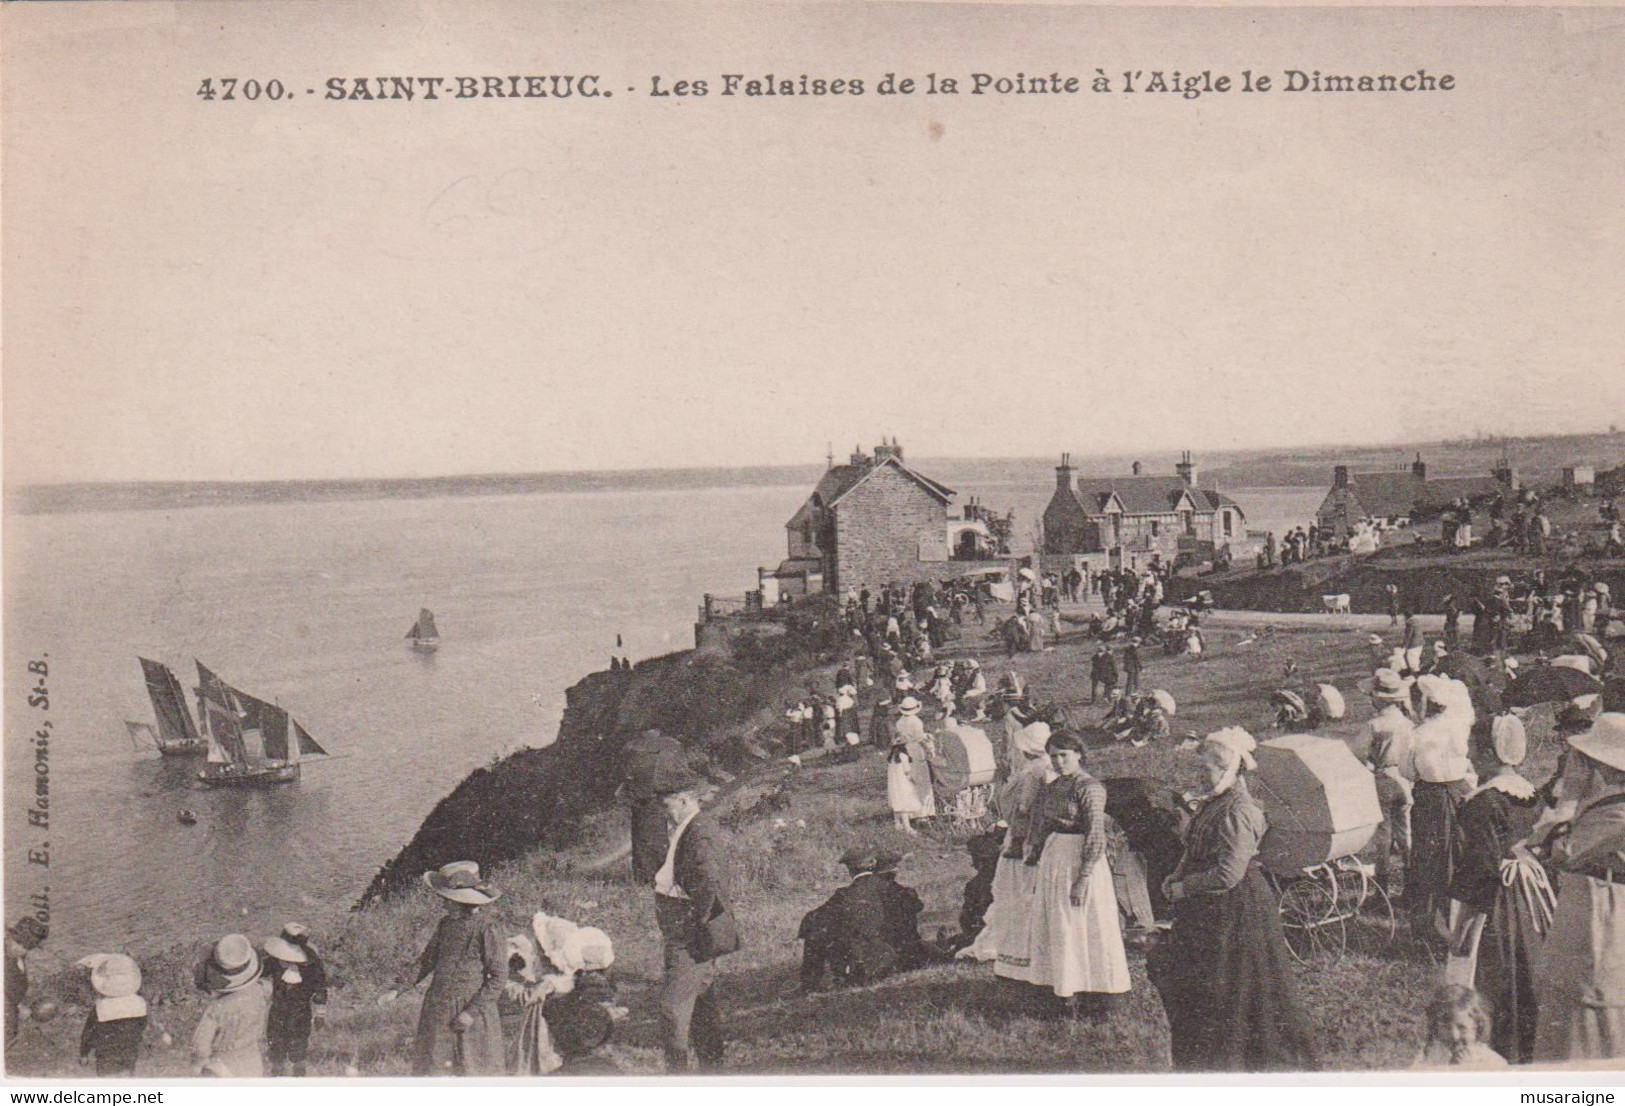 Cpa Plerin ST Laurent De La Mer Les Falaises De La Pointe De L'aigle - Plérin / Saint-Laurent-de-la-Mer